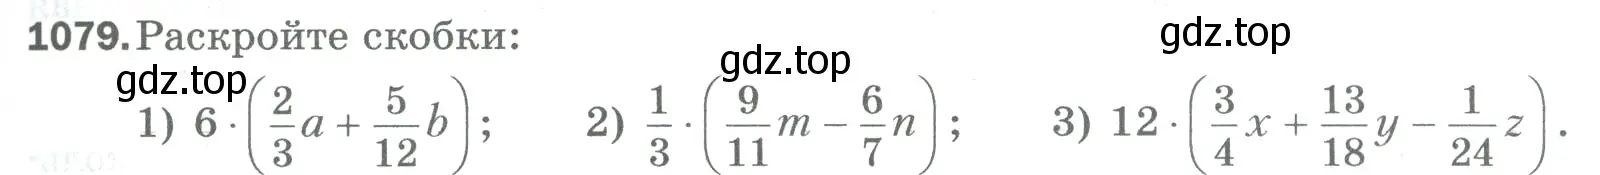 Условие номер 1079 (страница 243) гдз по математике 5 класс Мерзляк, Полонский, учебник